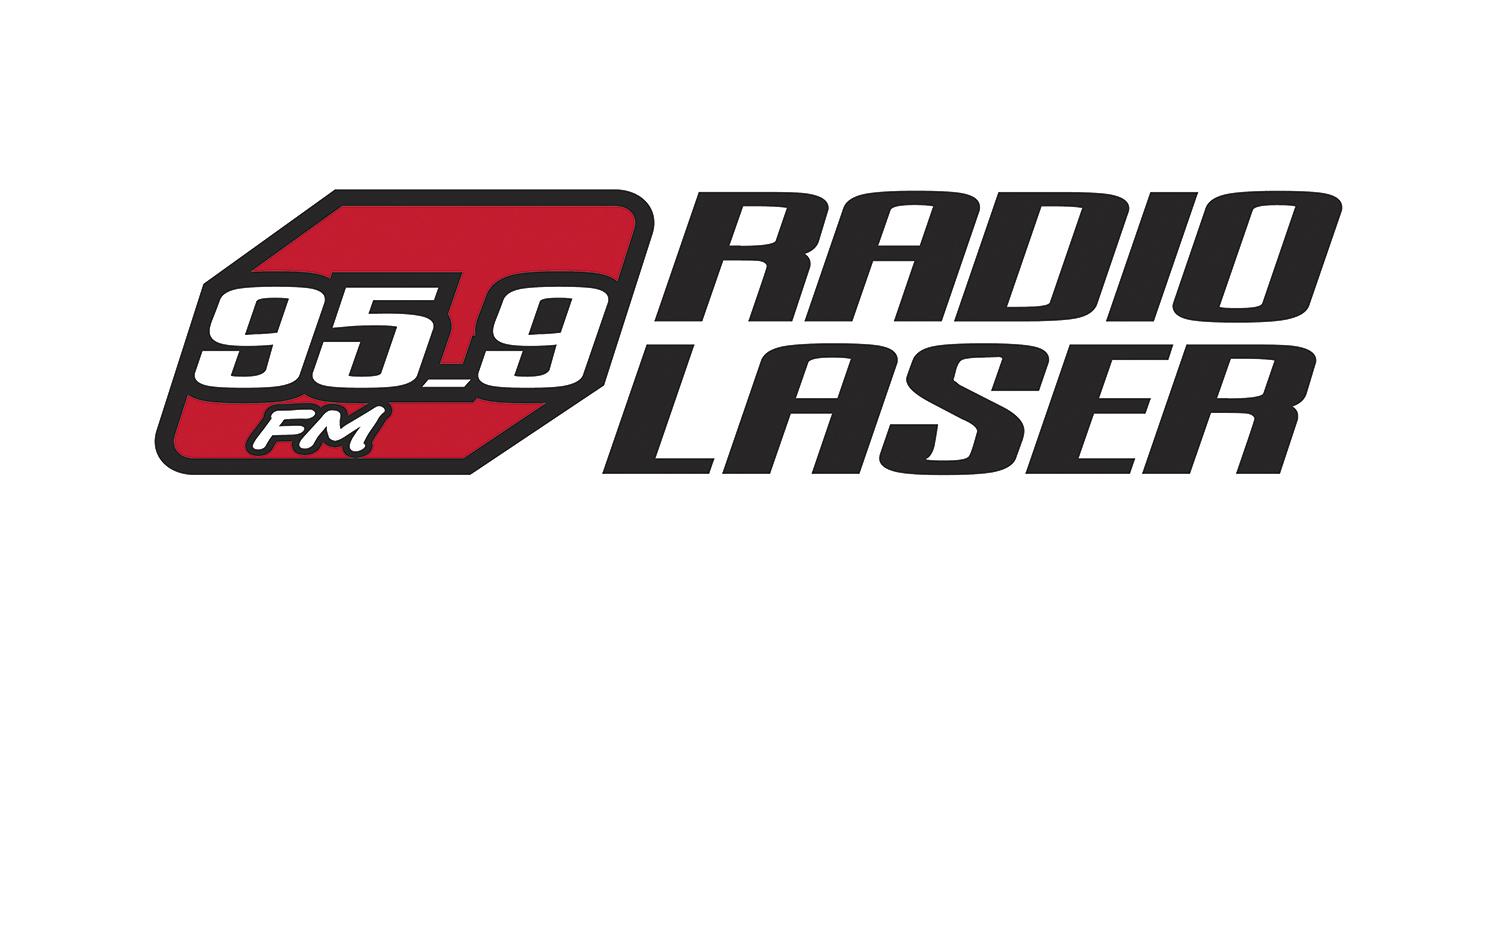 Lakbayl on Radio Laser